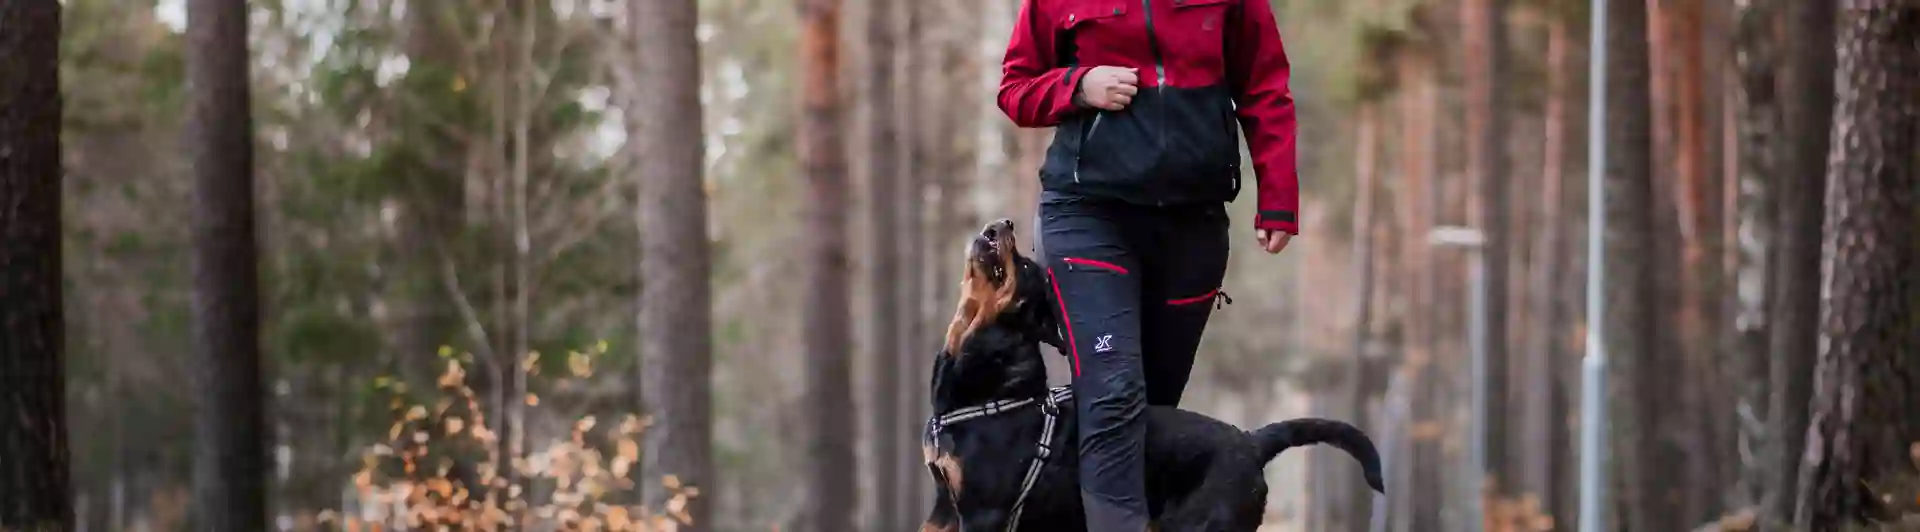 Kvinna och hund gör tricks i skogen